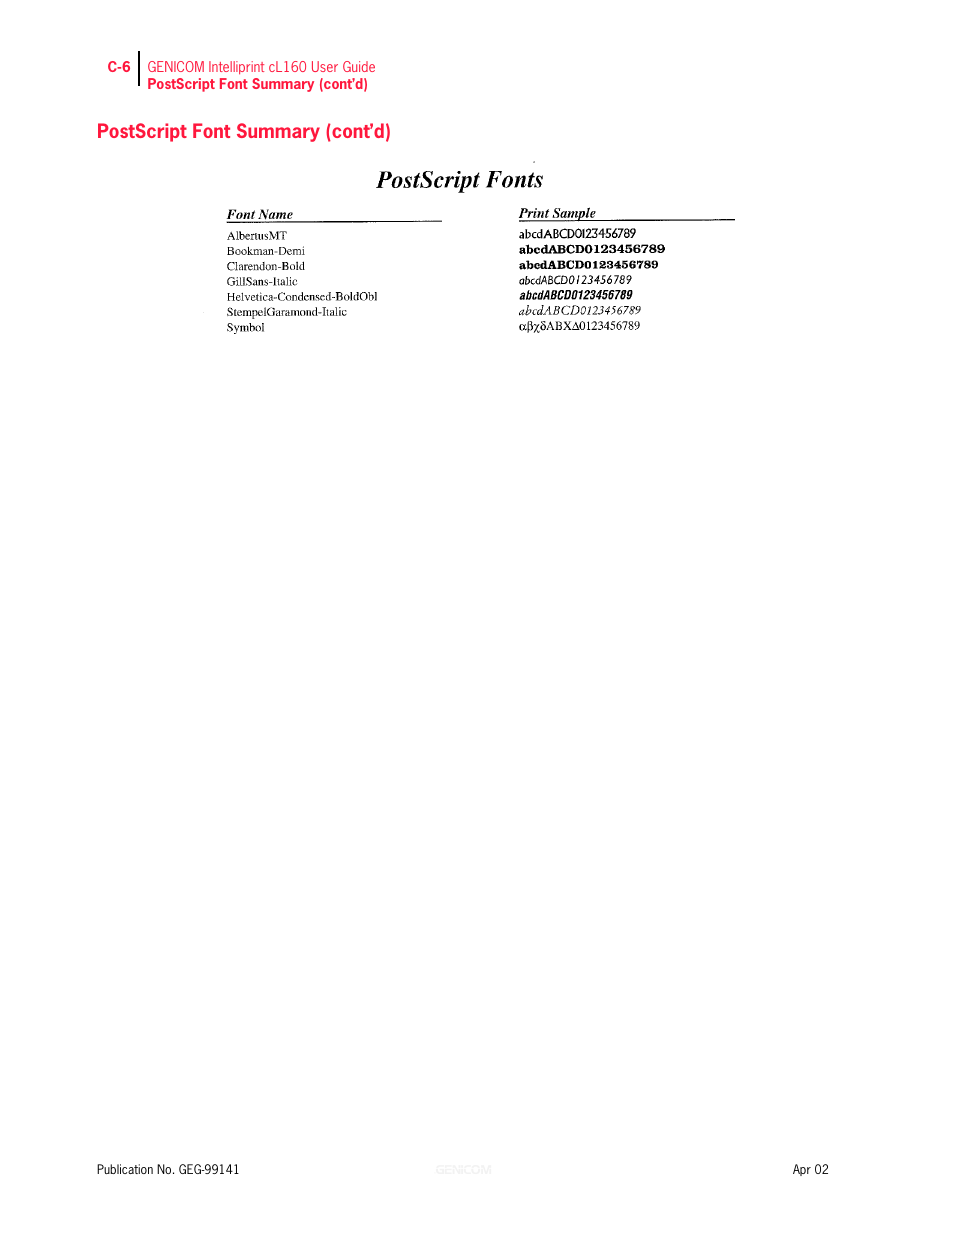 Postscript font summary (cont’d), Postscript font summary (cont’d) c-6 | Genicom cL160 User Manual | Page 204 / 216